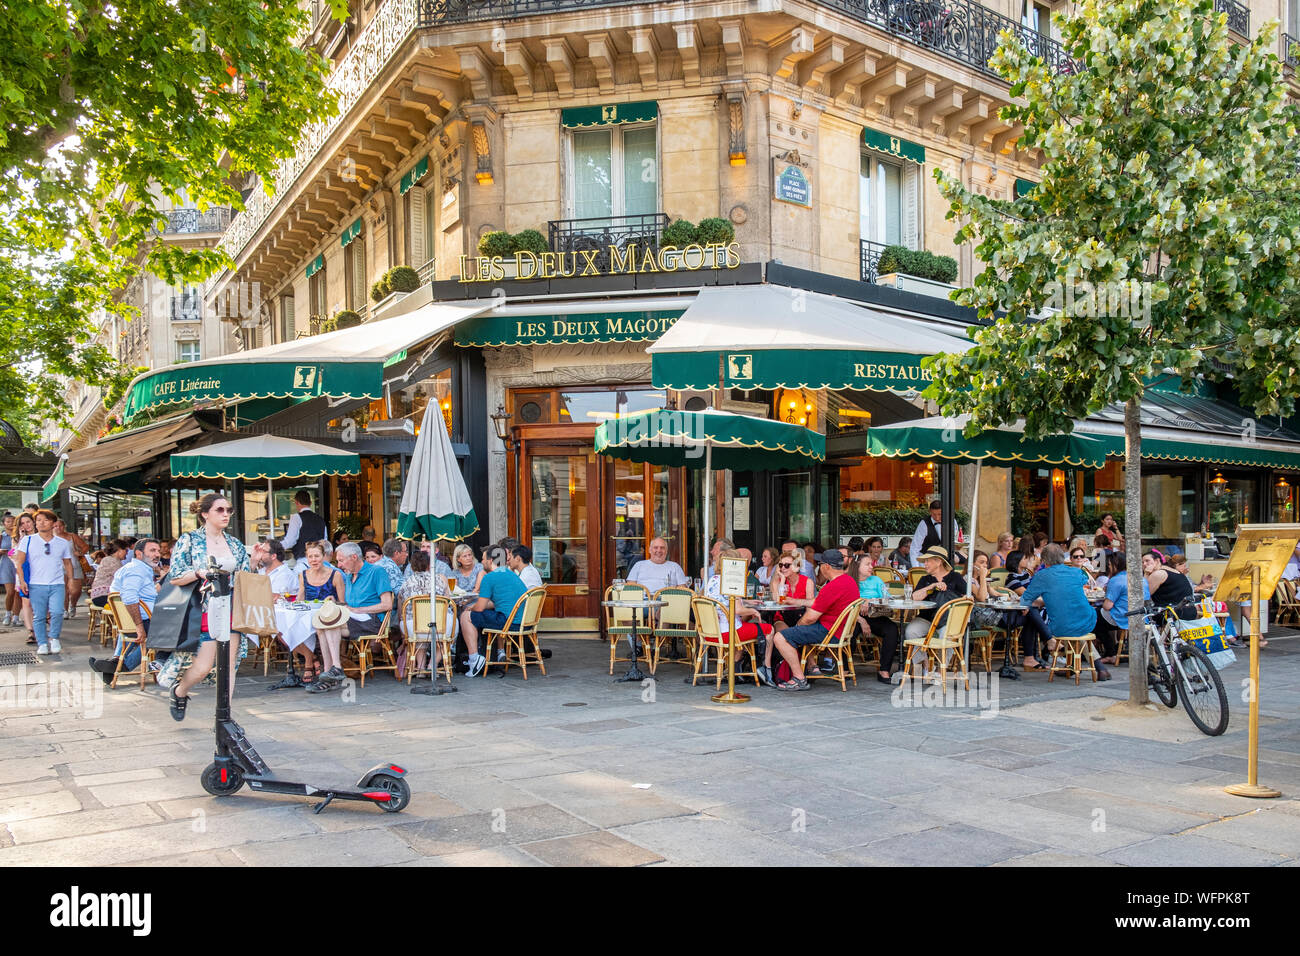 France, Paris, le quartier de Saint Germain des Près, les Deux Magots restaurant Banque D'Images